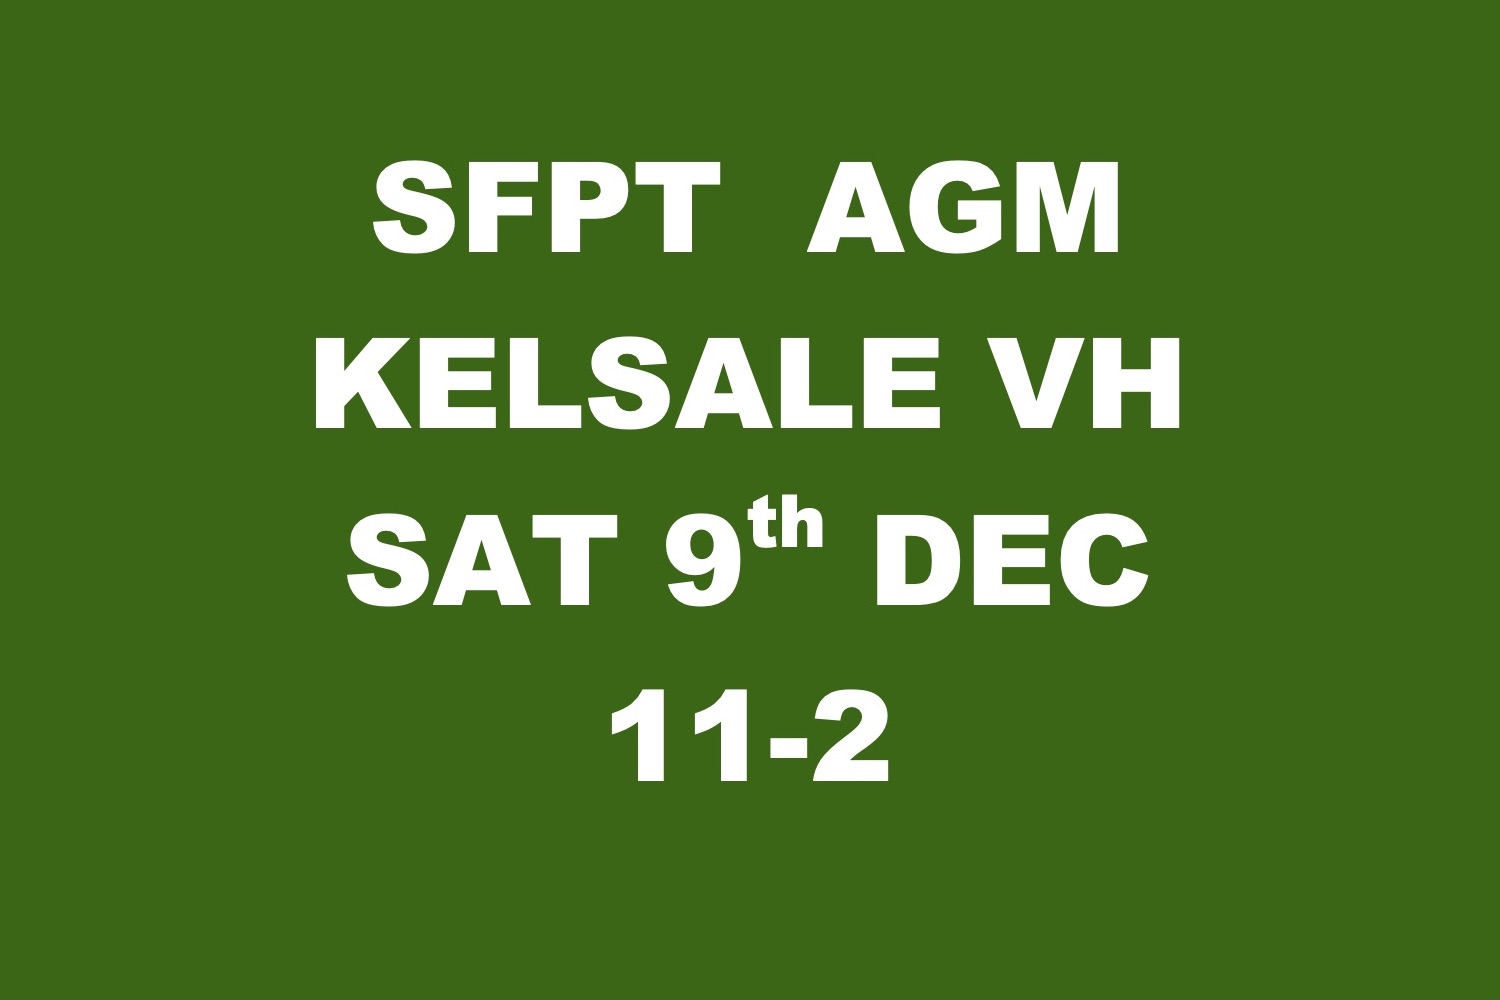 AGM: Kelsale VH, Sat 9th Dec. 11am-2pm